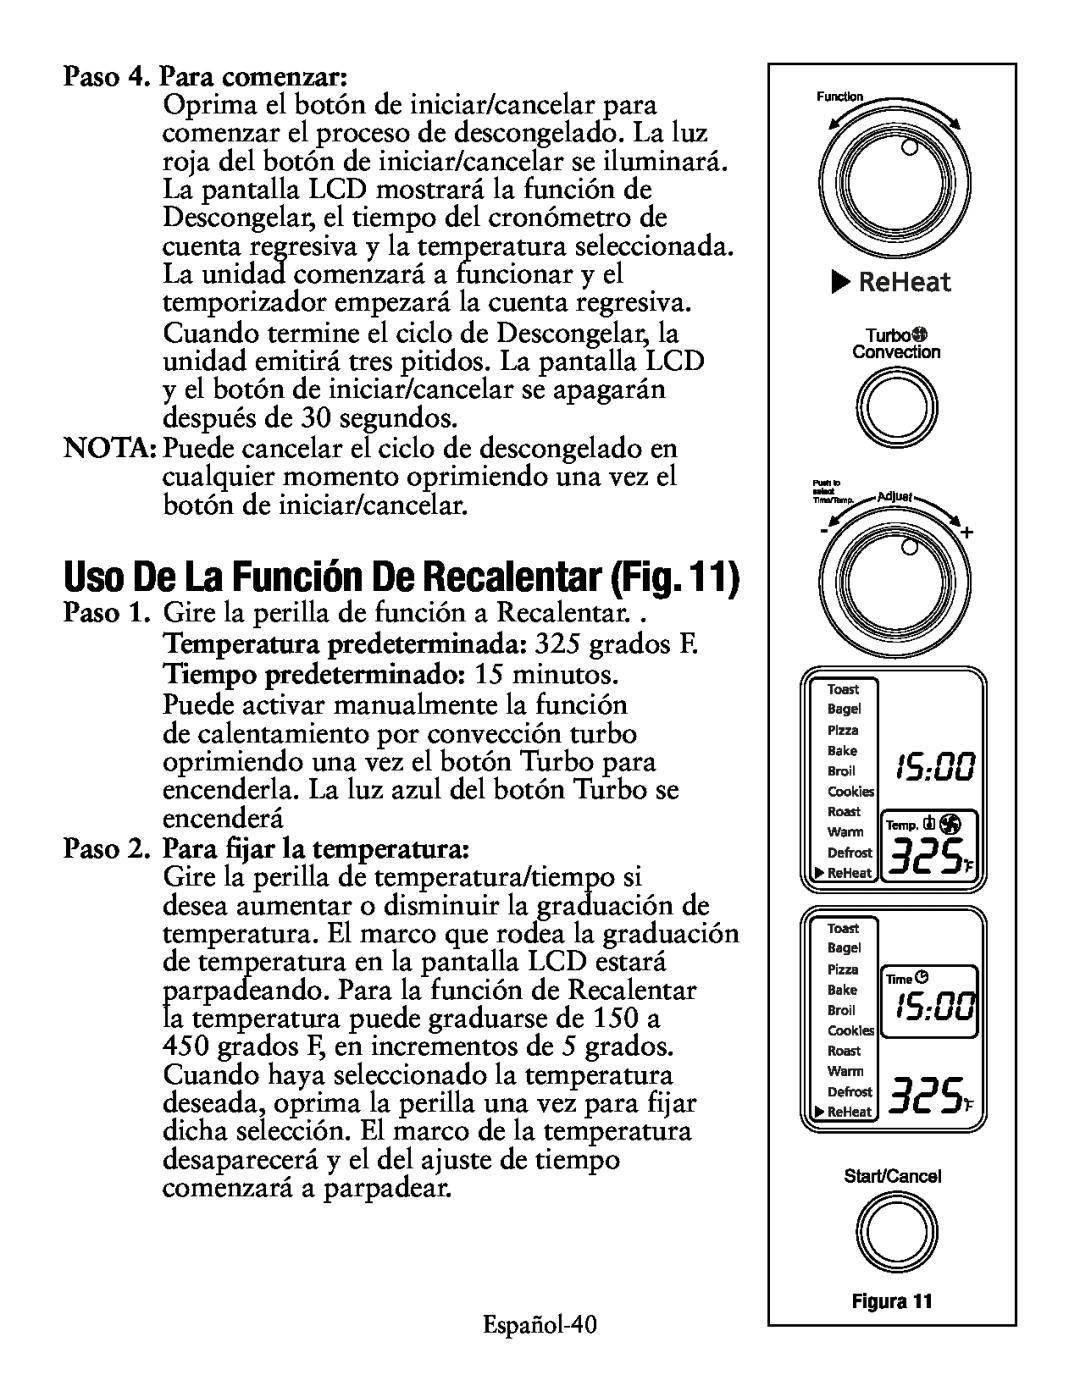 Oster TSSTTVDG01 user manual Uso De La Función De Recalentar Fig, Tiempo predeterminado 15 minutos, Paso 4. Para comenzar 